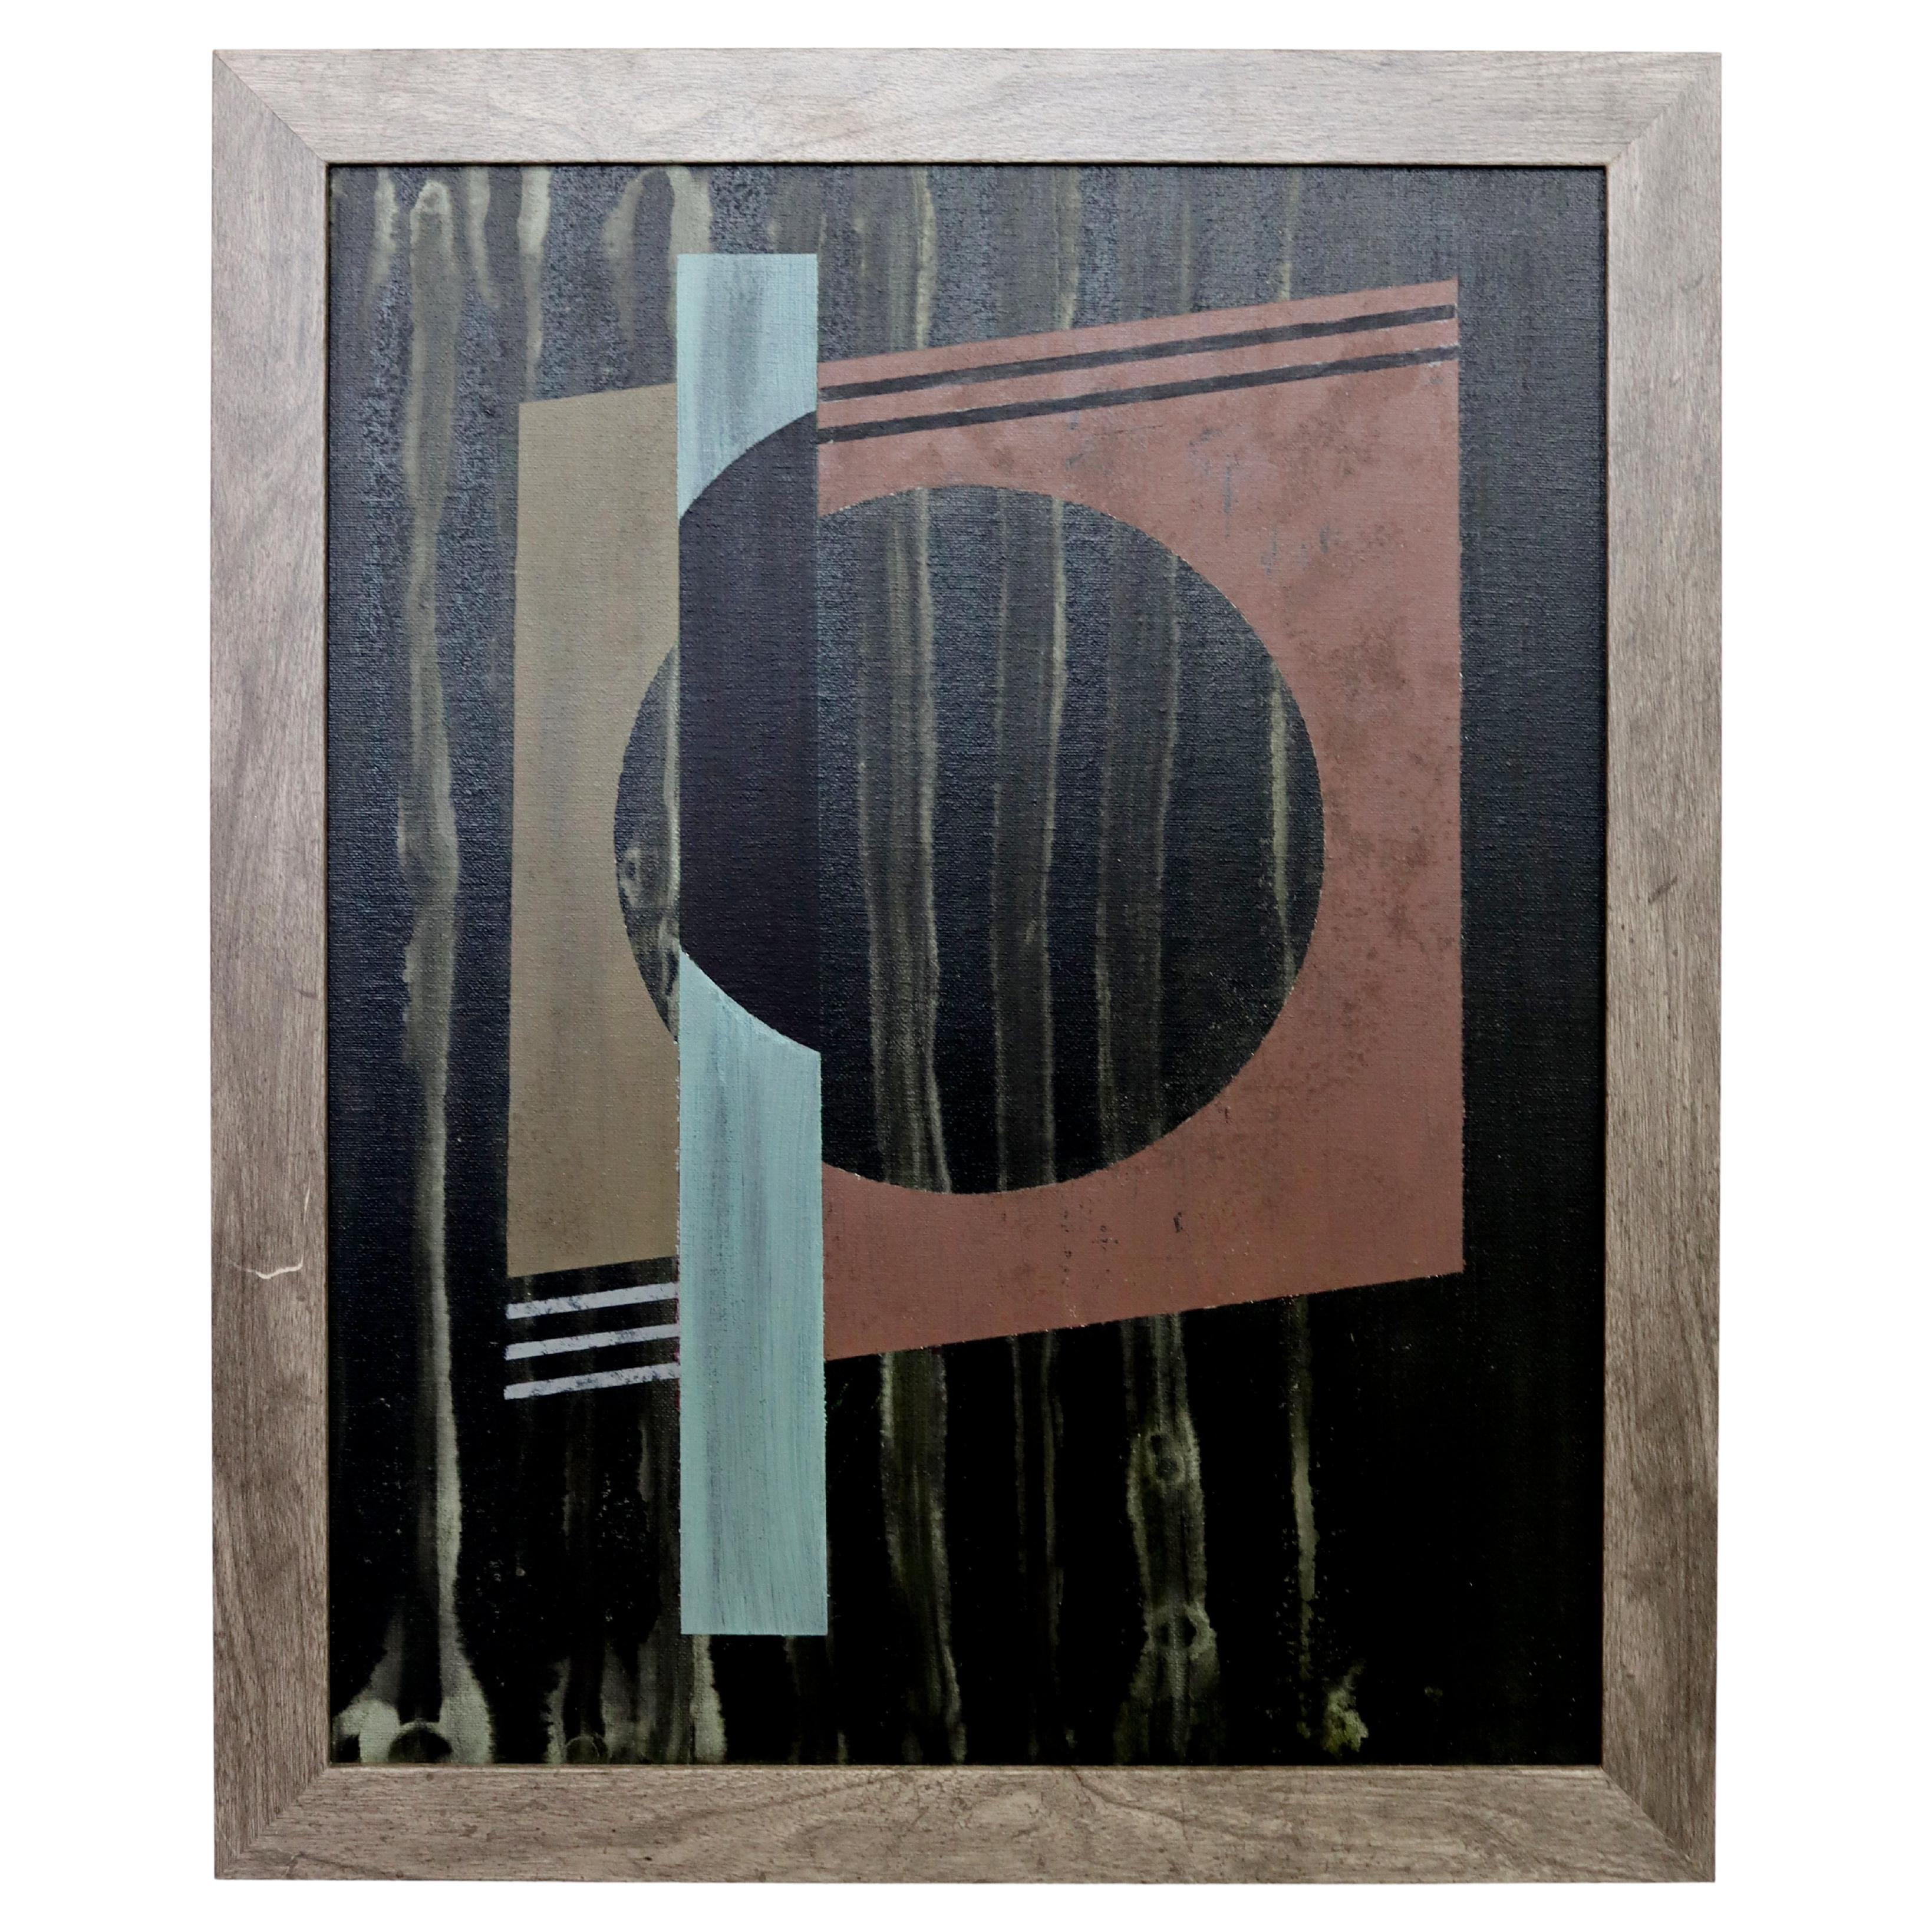 Framed Gunda Hass, signiertes Gemälde auf Karton, zeitgenössische Moderne, 2016 Kugel